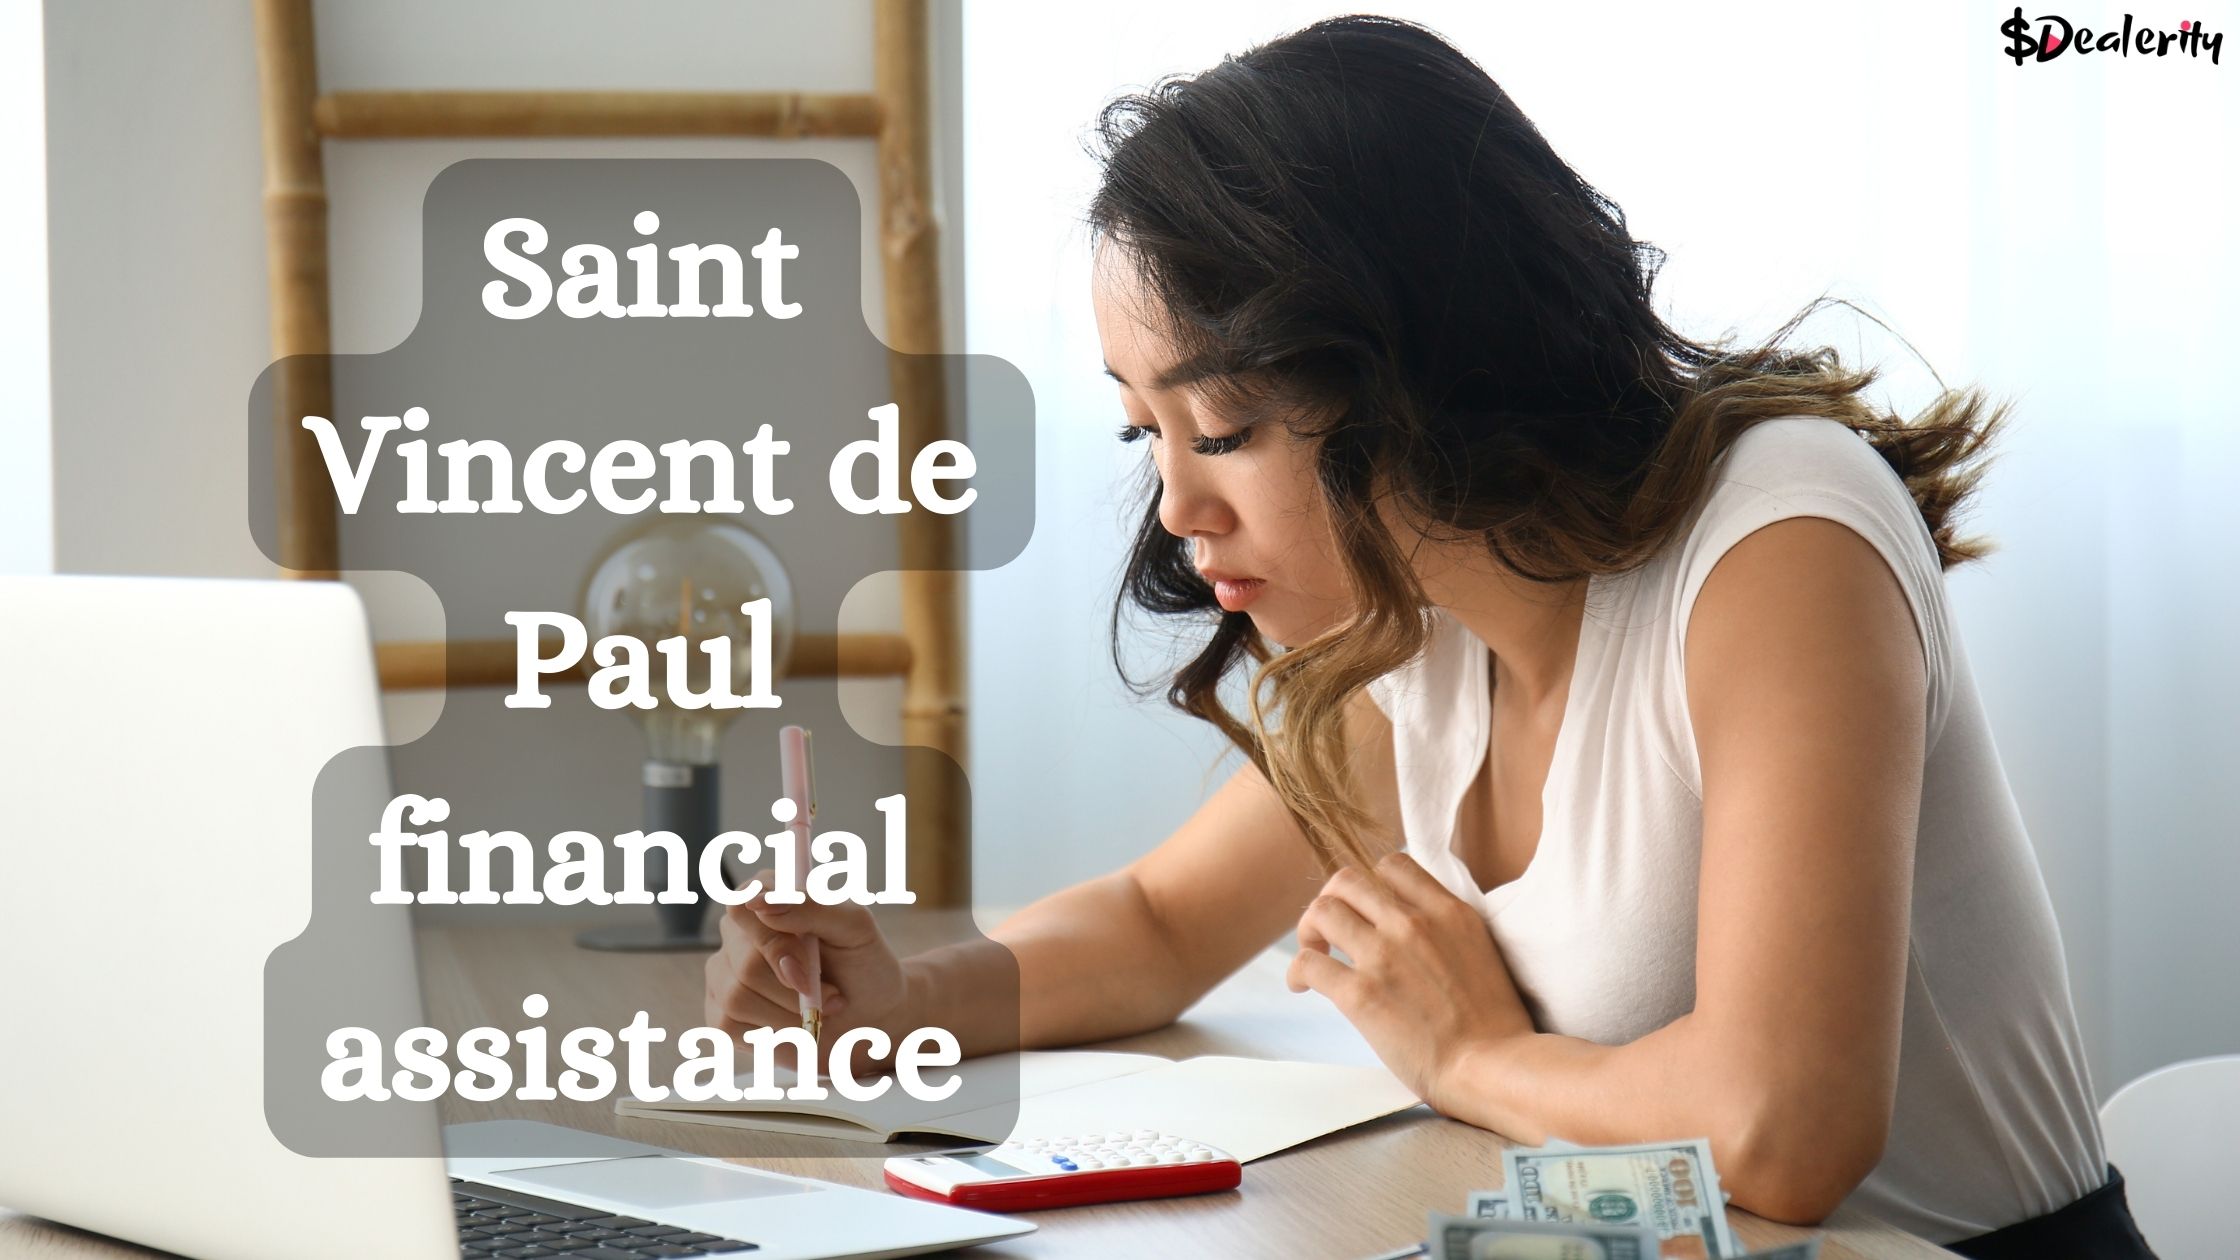 Saint Vincent de Paul financial assistance